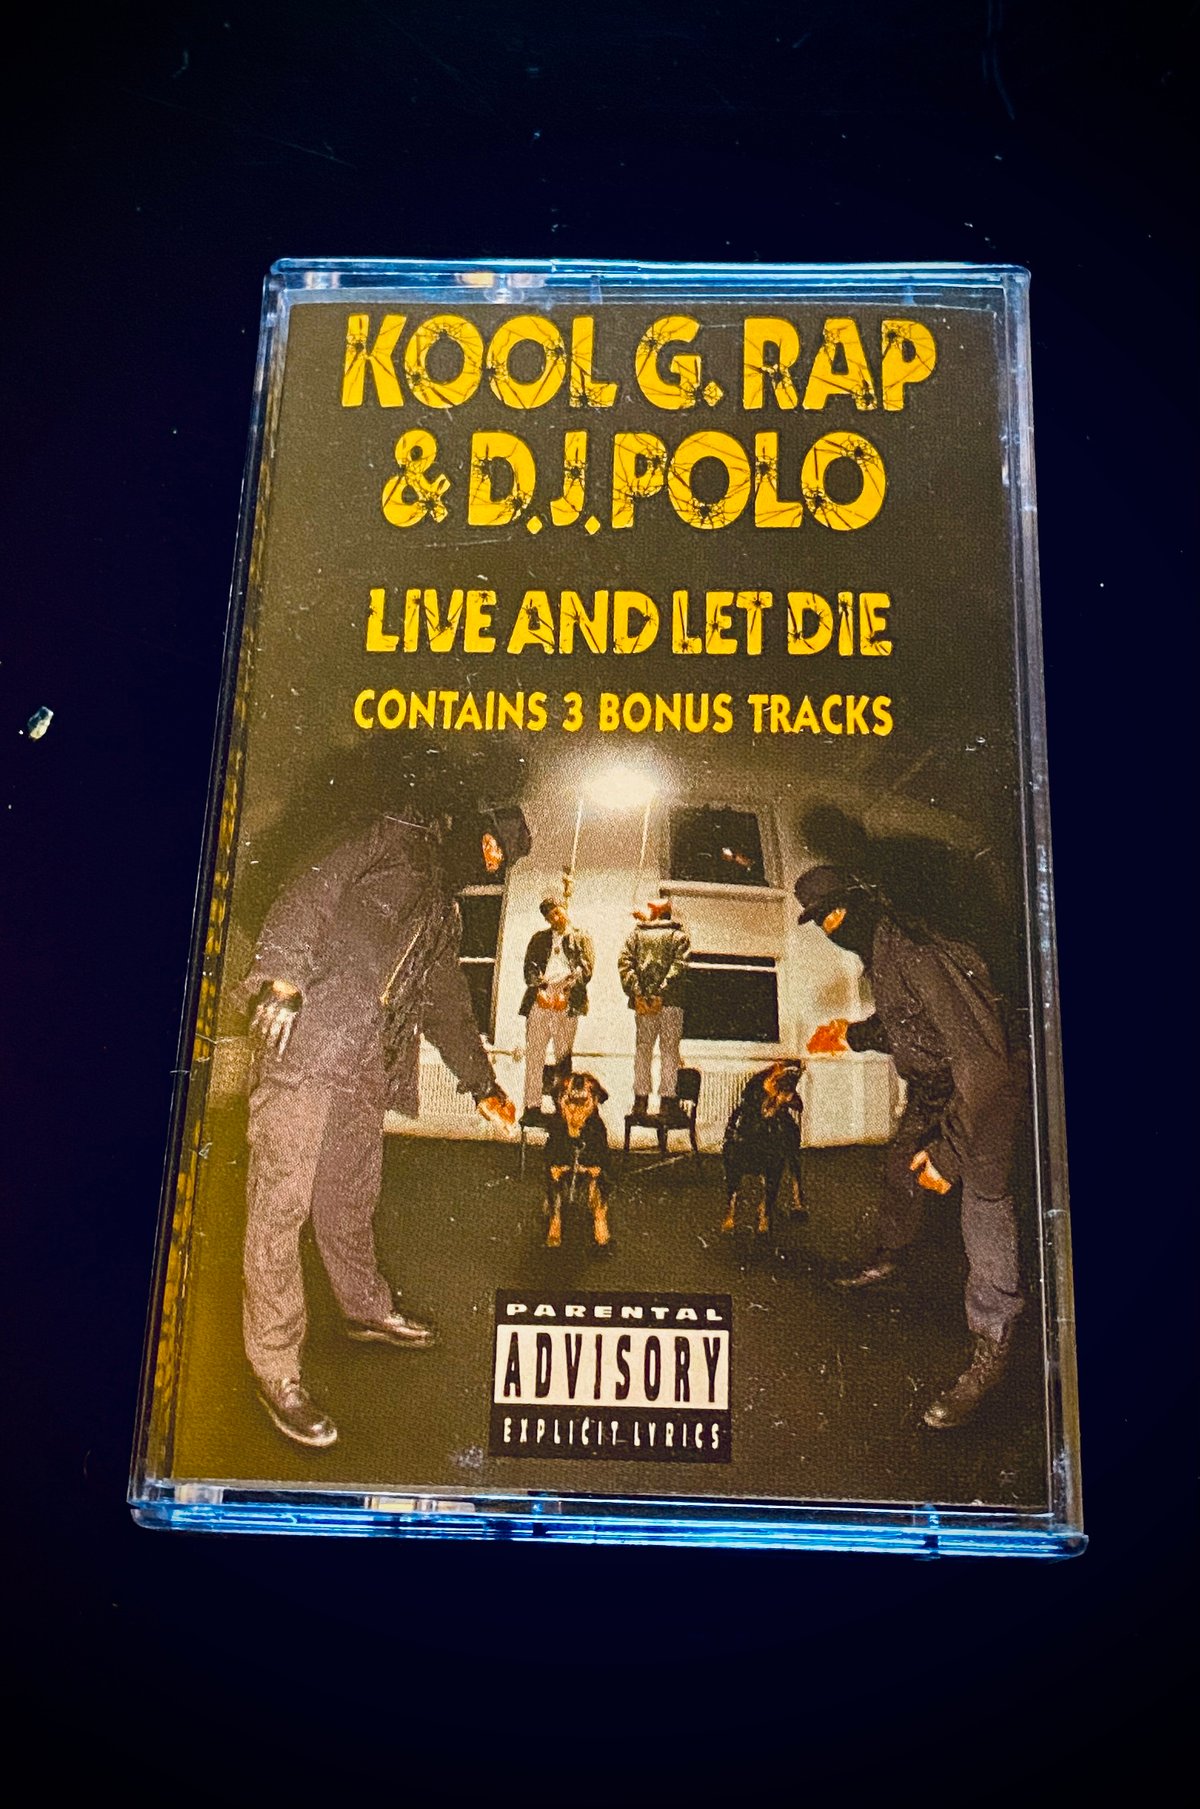 Kool G Rap “Live and let Die”